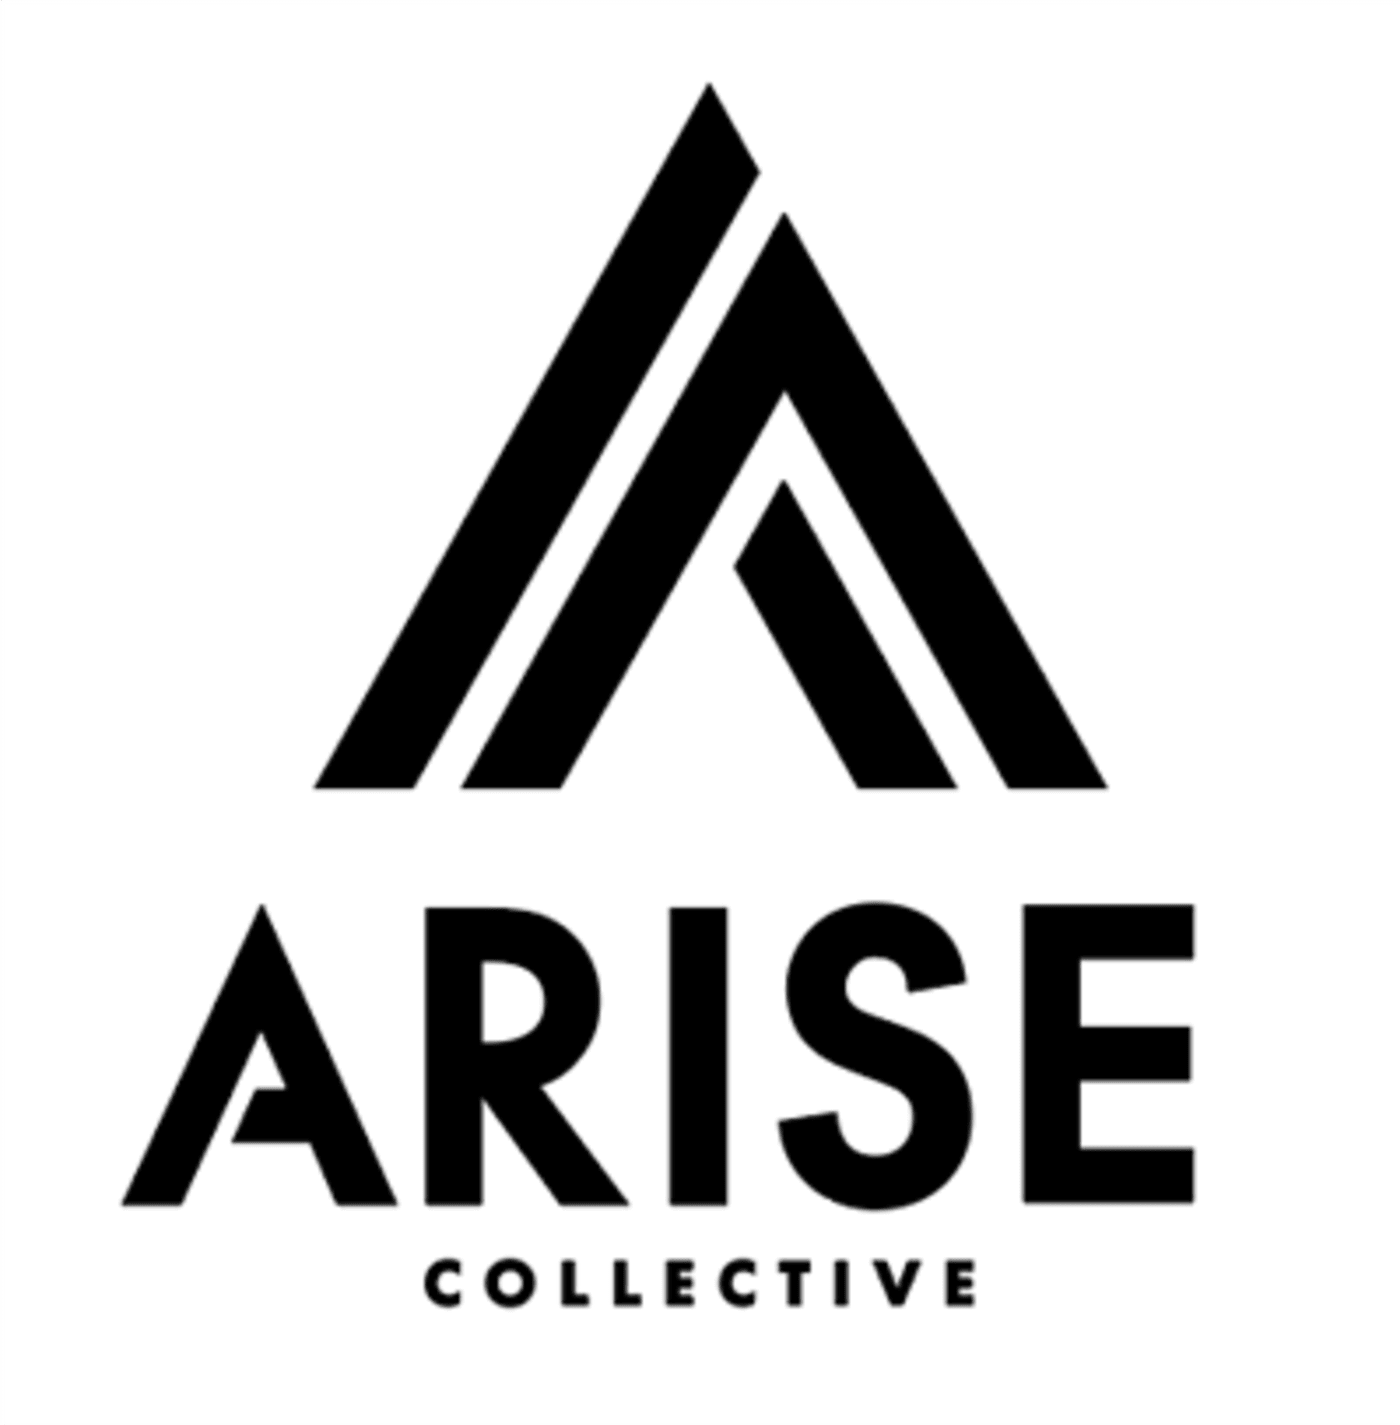 Arise collective logo